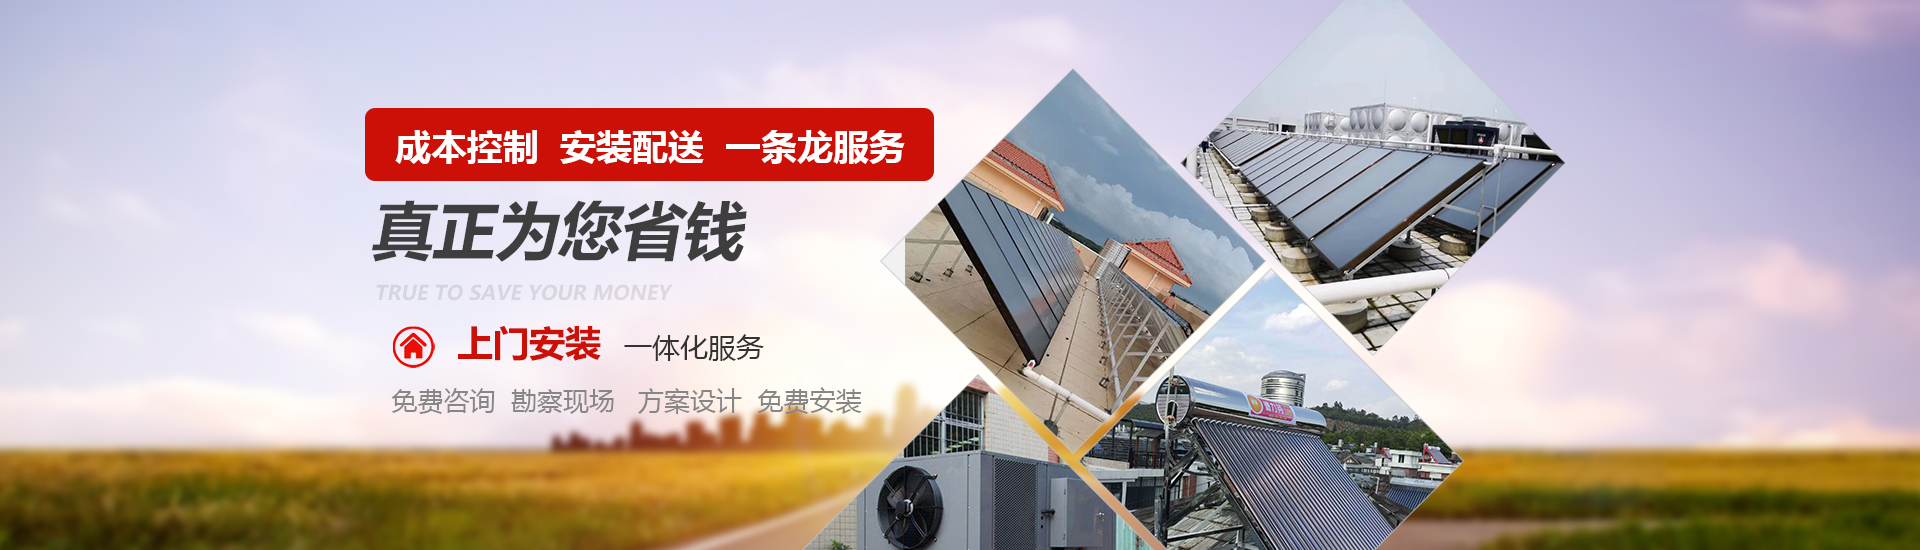 太陽能空氣能熱水器(qì)安裝配送一條龍服務